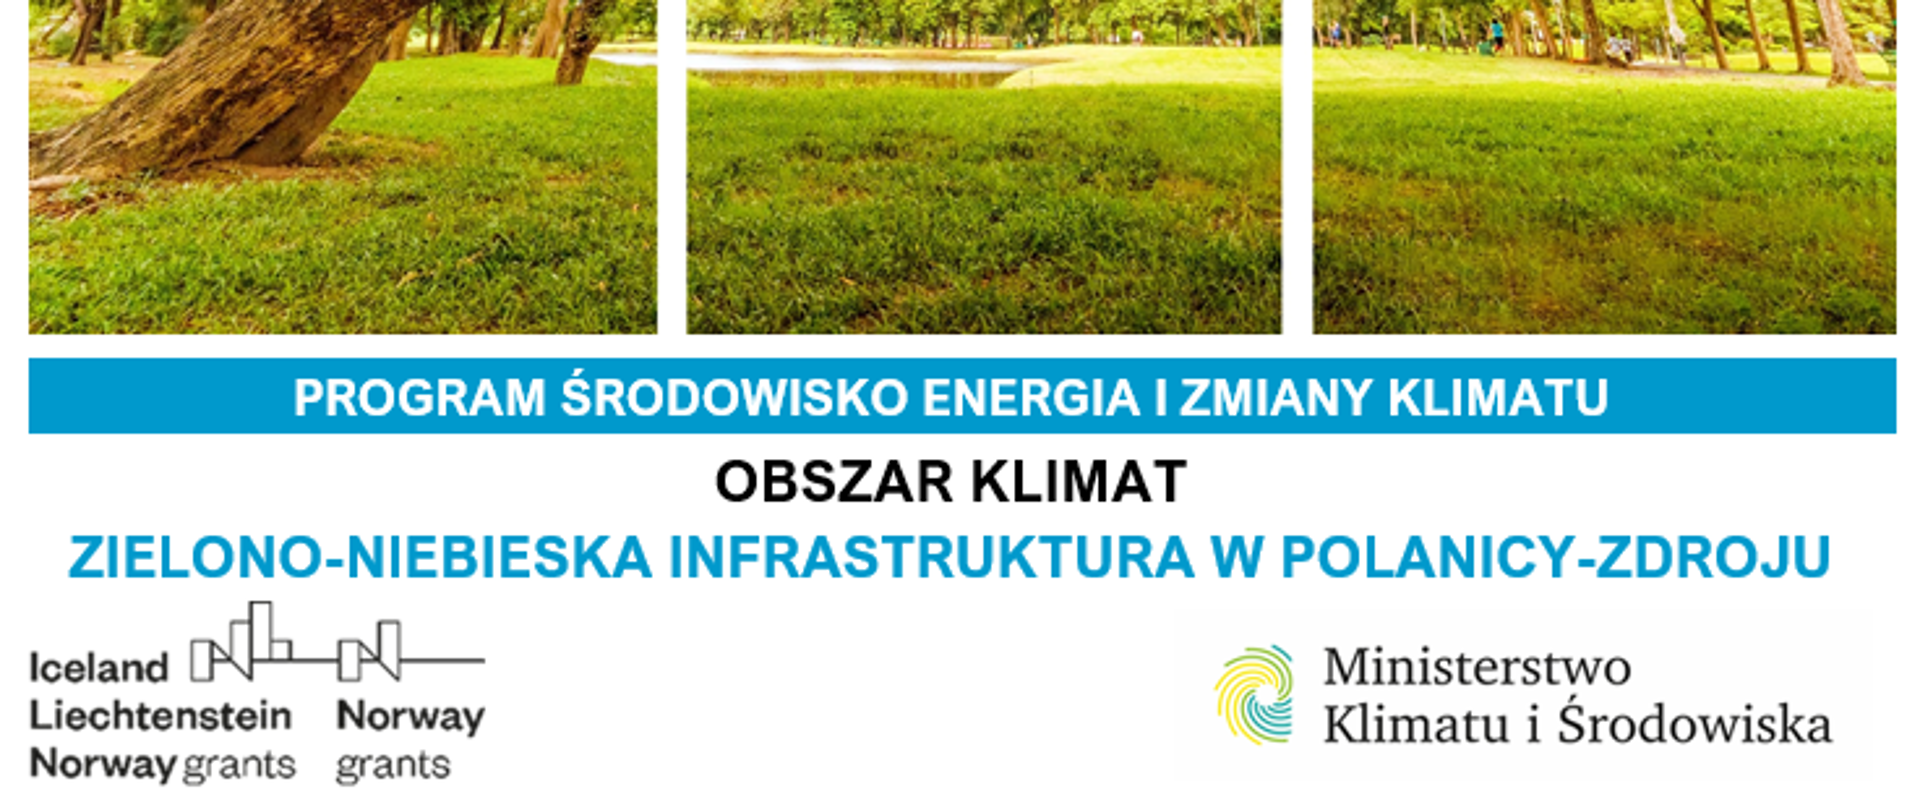 Inwestycje w zakresie zielono-niebieskiej infrastruktury w Polanicy-Zdrój